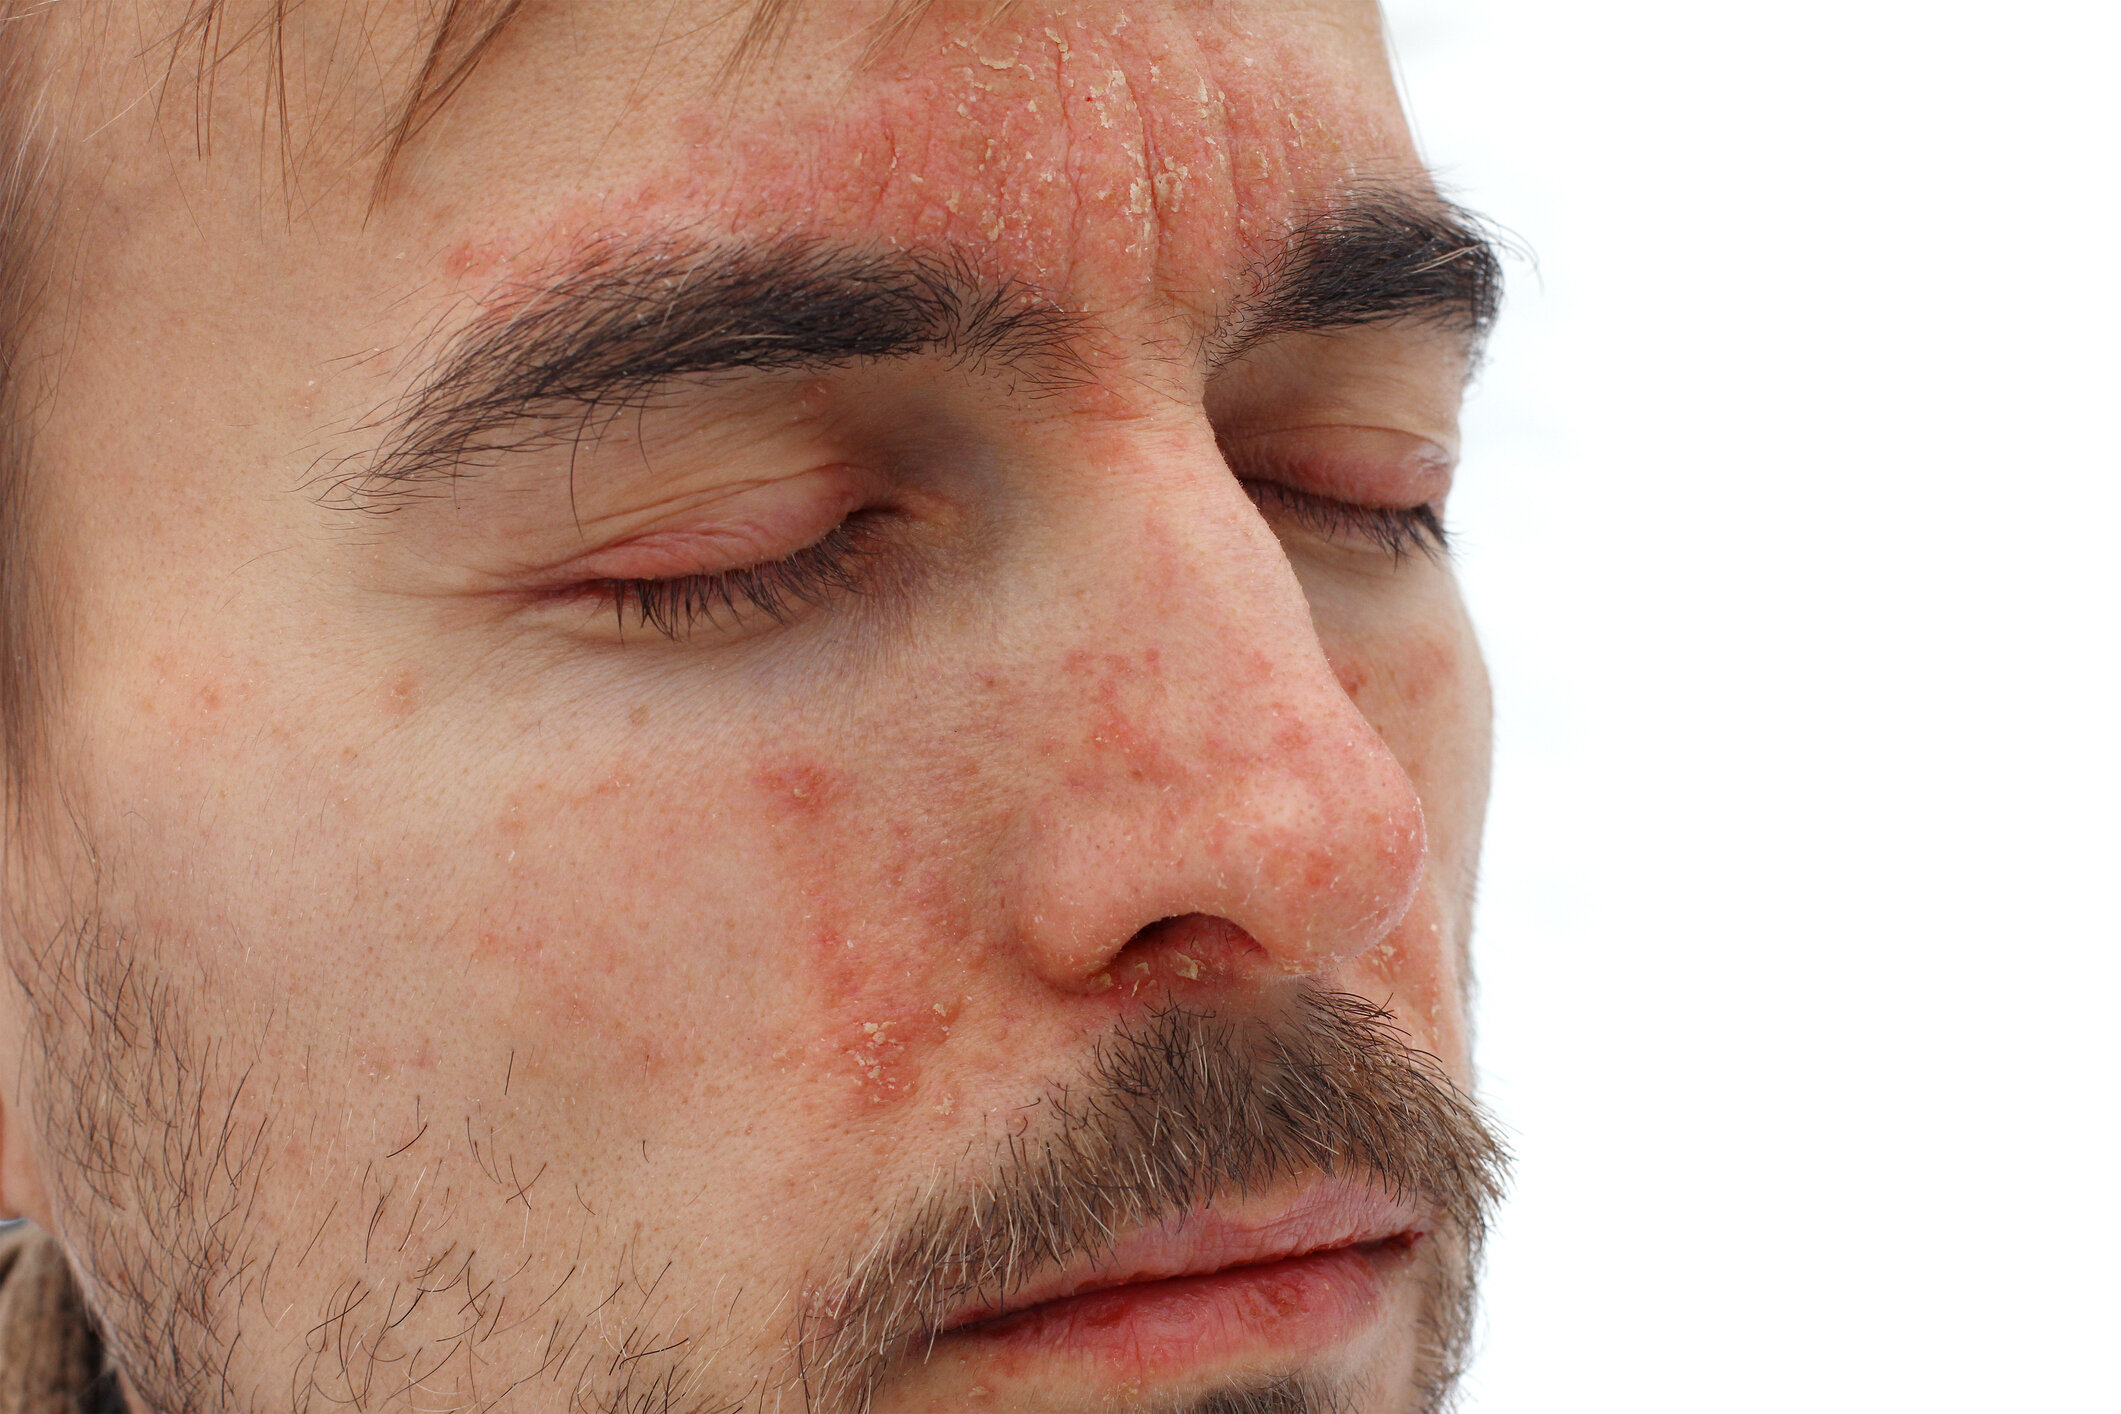 Szeborreás pikkelysömör az arcon kezelés népi gyógymódokkal